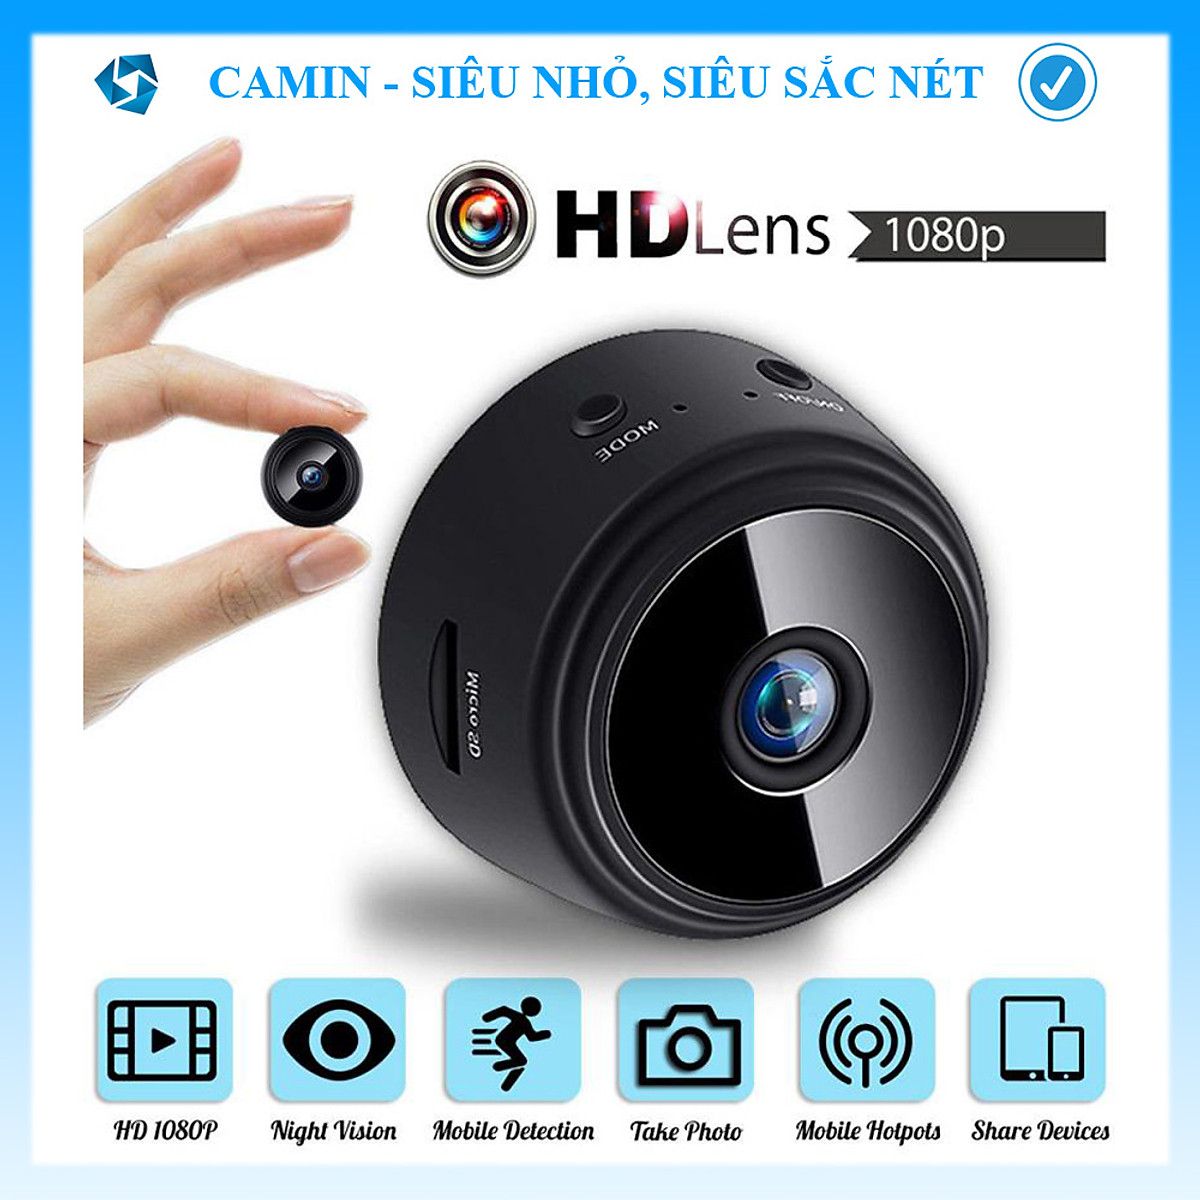 ( HÀNG SIÊU NÉT ) Camera mini siêu nhỏ giám sát A9 FullHD 1080p IP wifi kết nối với điện thoại, có pin